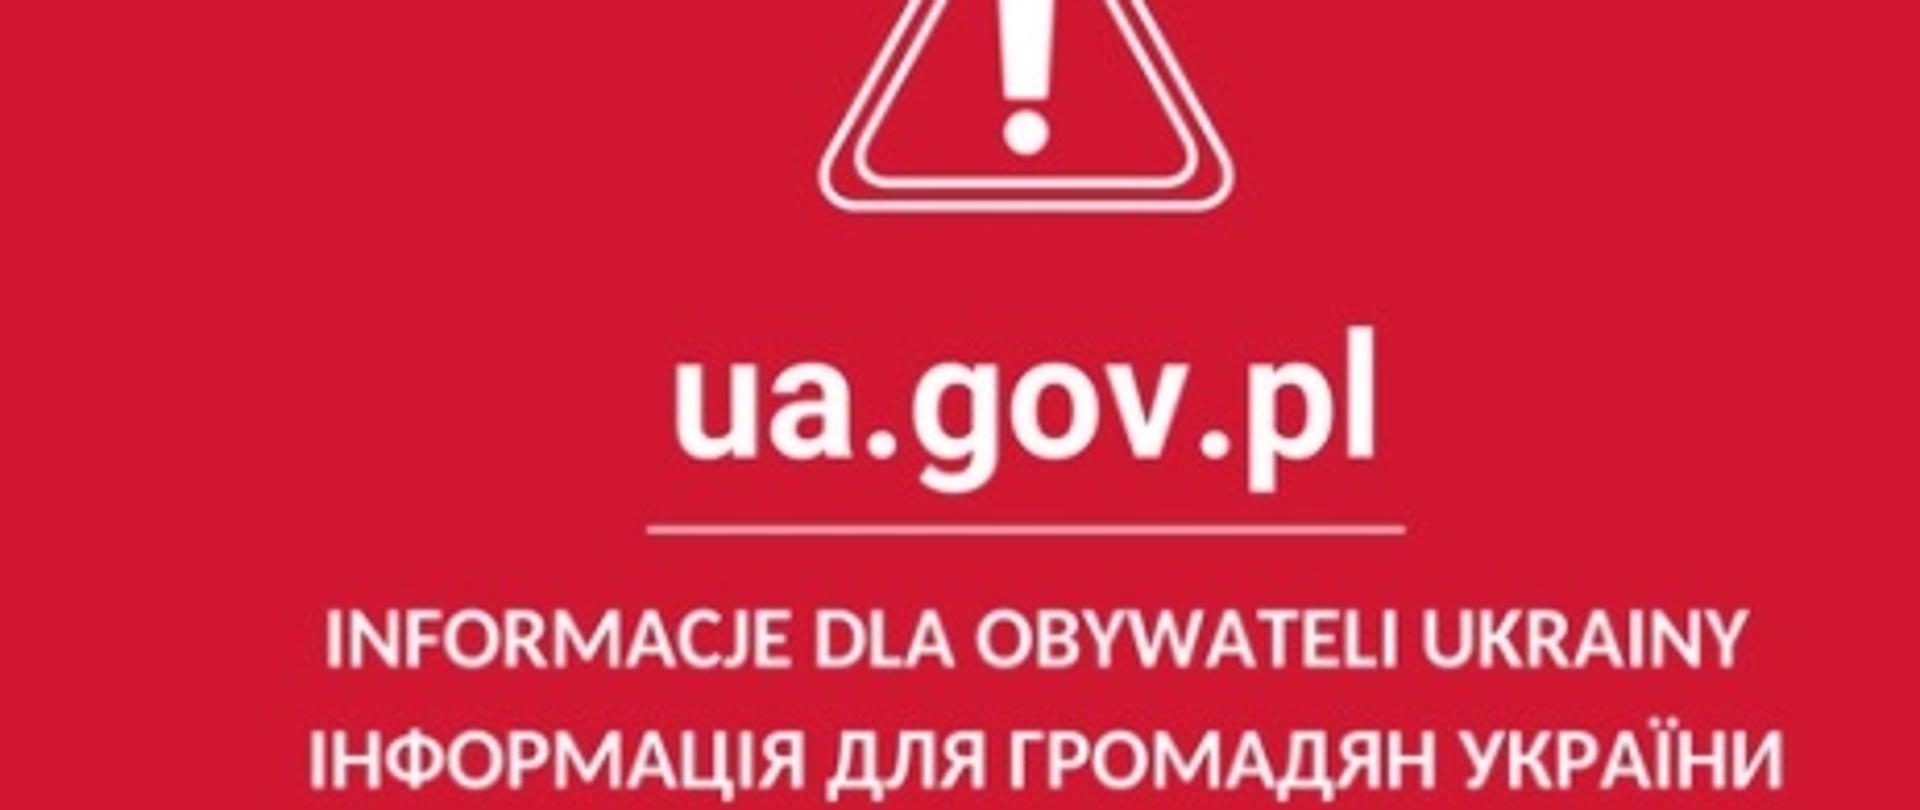 Informacja dla obywateli Ukrainy wraz z linkiem do strony ua.gov.pl